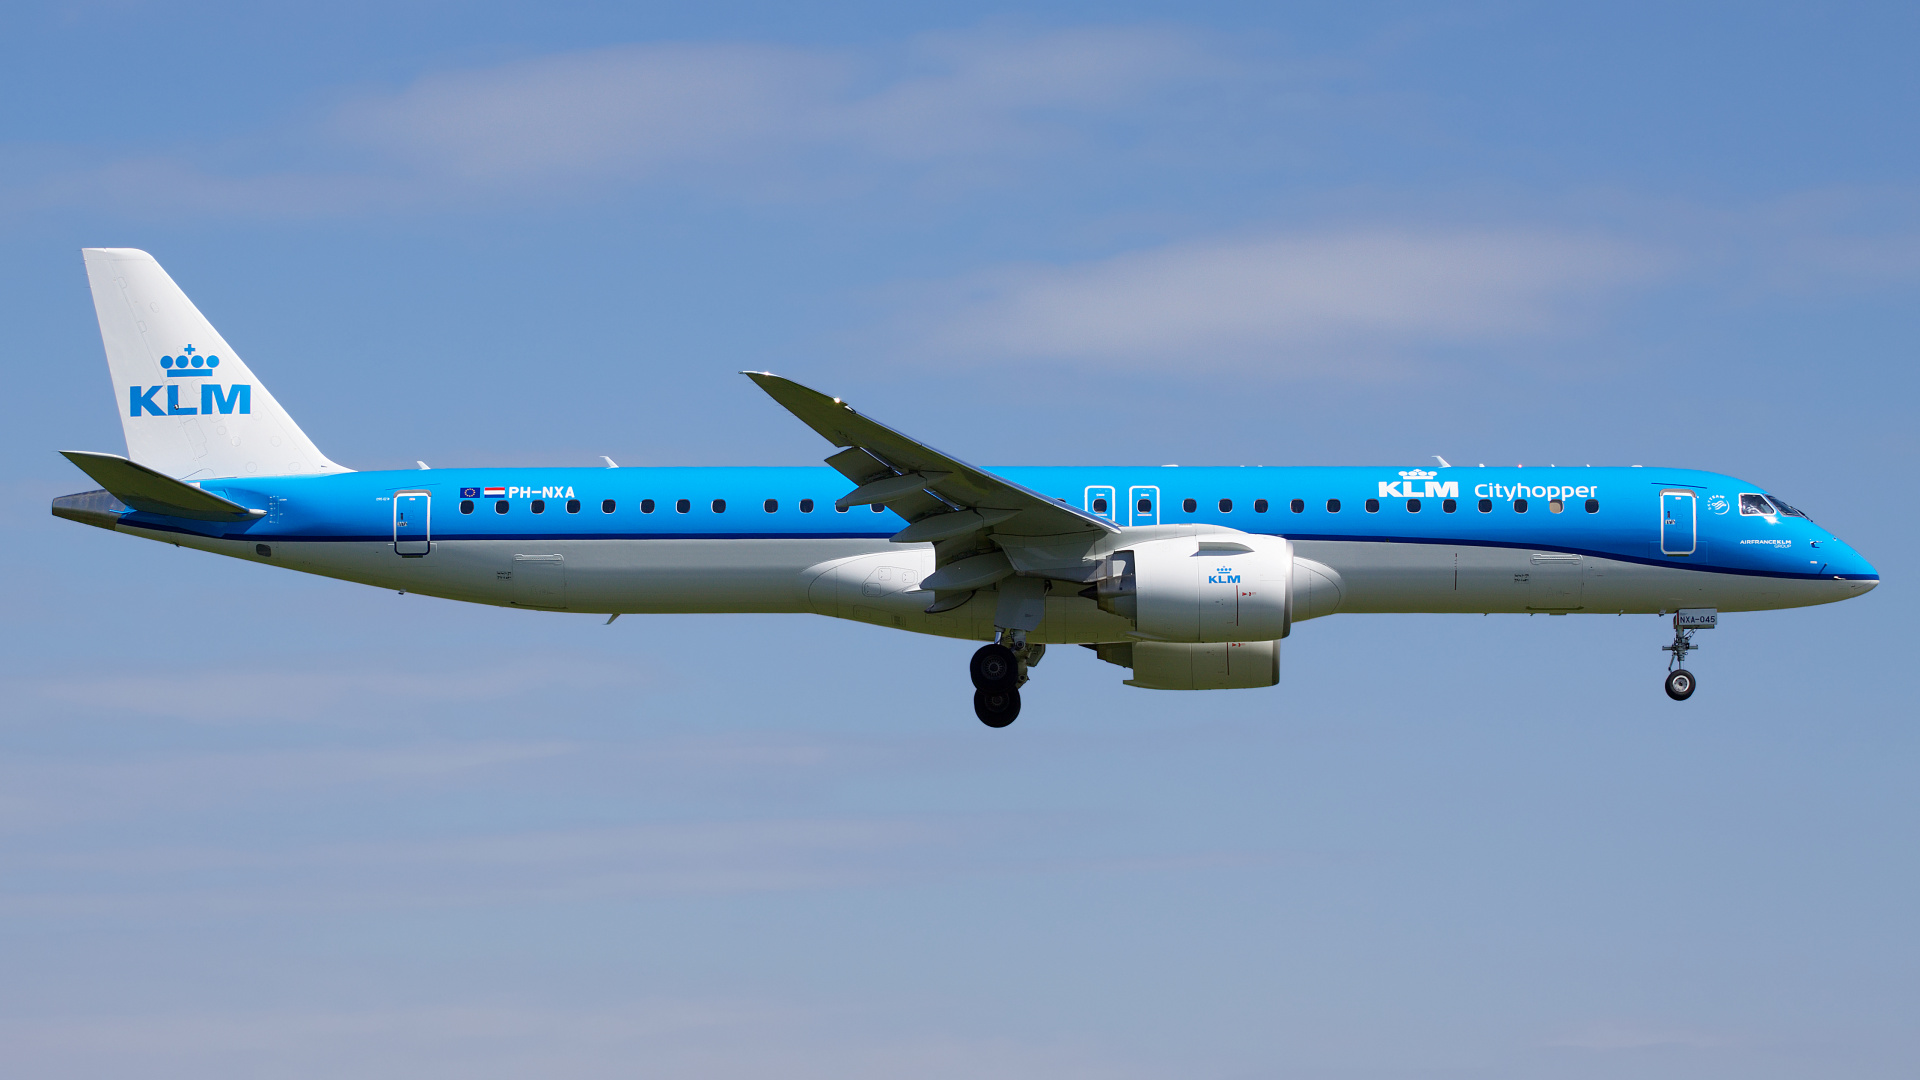 PH-NXA (Aircraft » EPWA Spotting » Embraer E195-E2 » KLM Cityhopper)